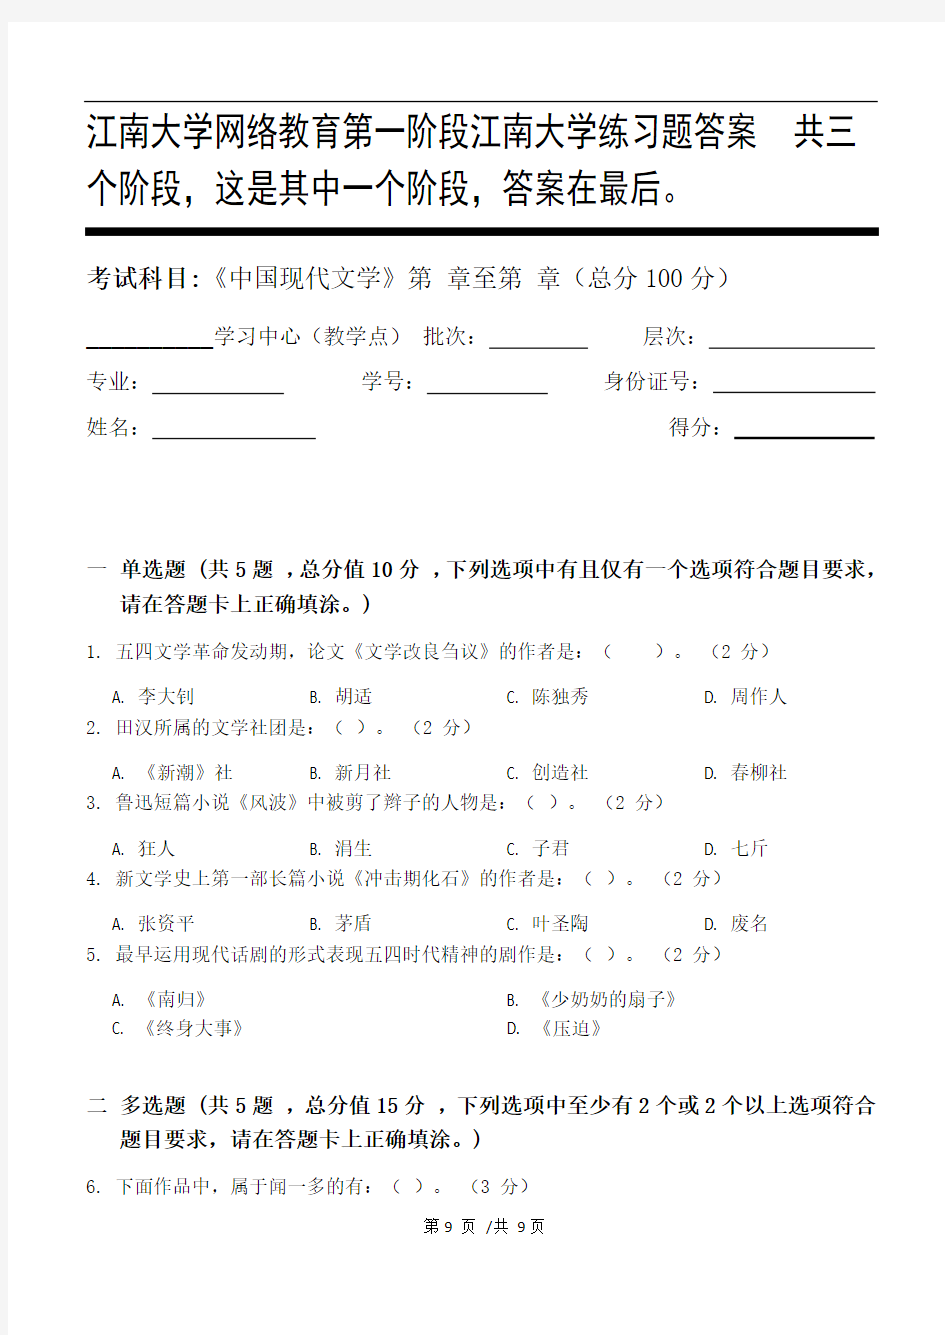 中国现代文学第1阶段江南大学练习题答案  共三个阶段,这是其中一个阶段,答案在最后。